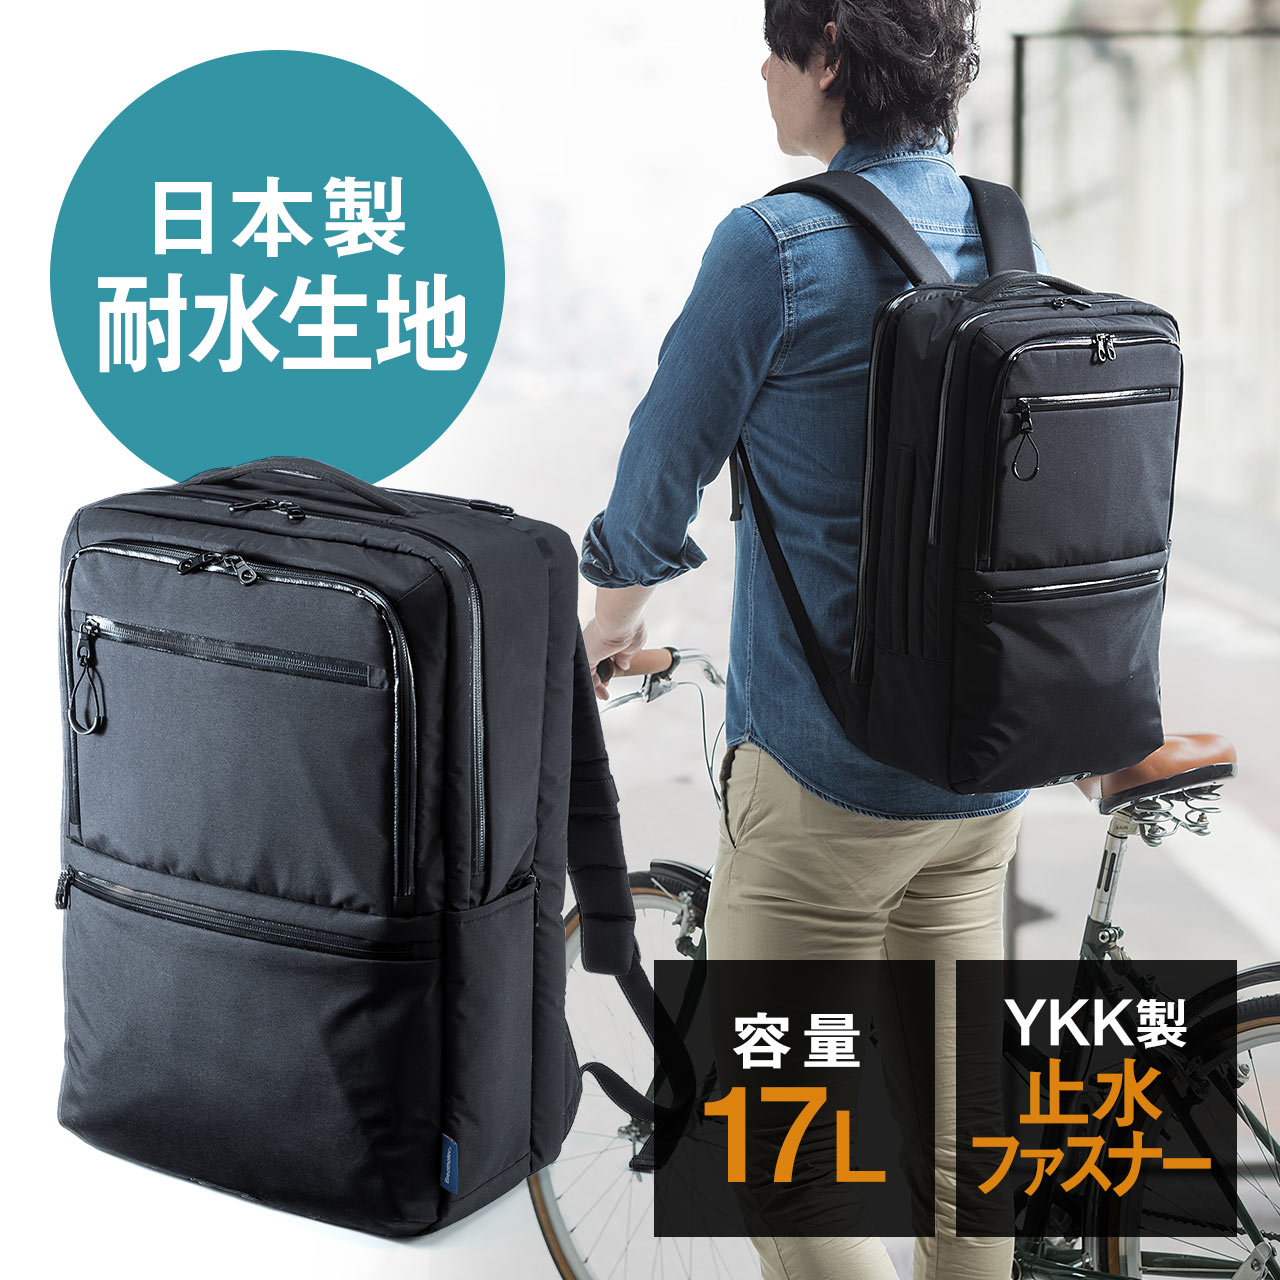 スクエアリュック バックパック 耐水 日本製素材使用 Ykkファスナー ビジネス A3収納対応 ブラック 0 Bagbp010bkの販売商品 通販ならサンワダイレクト